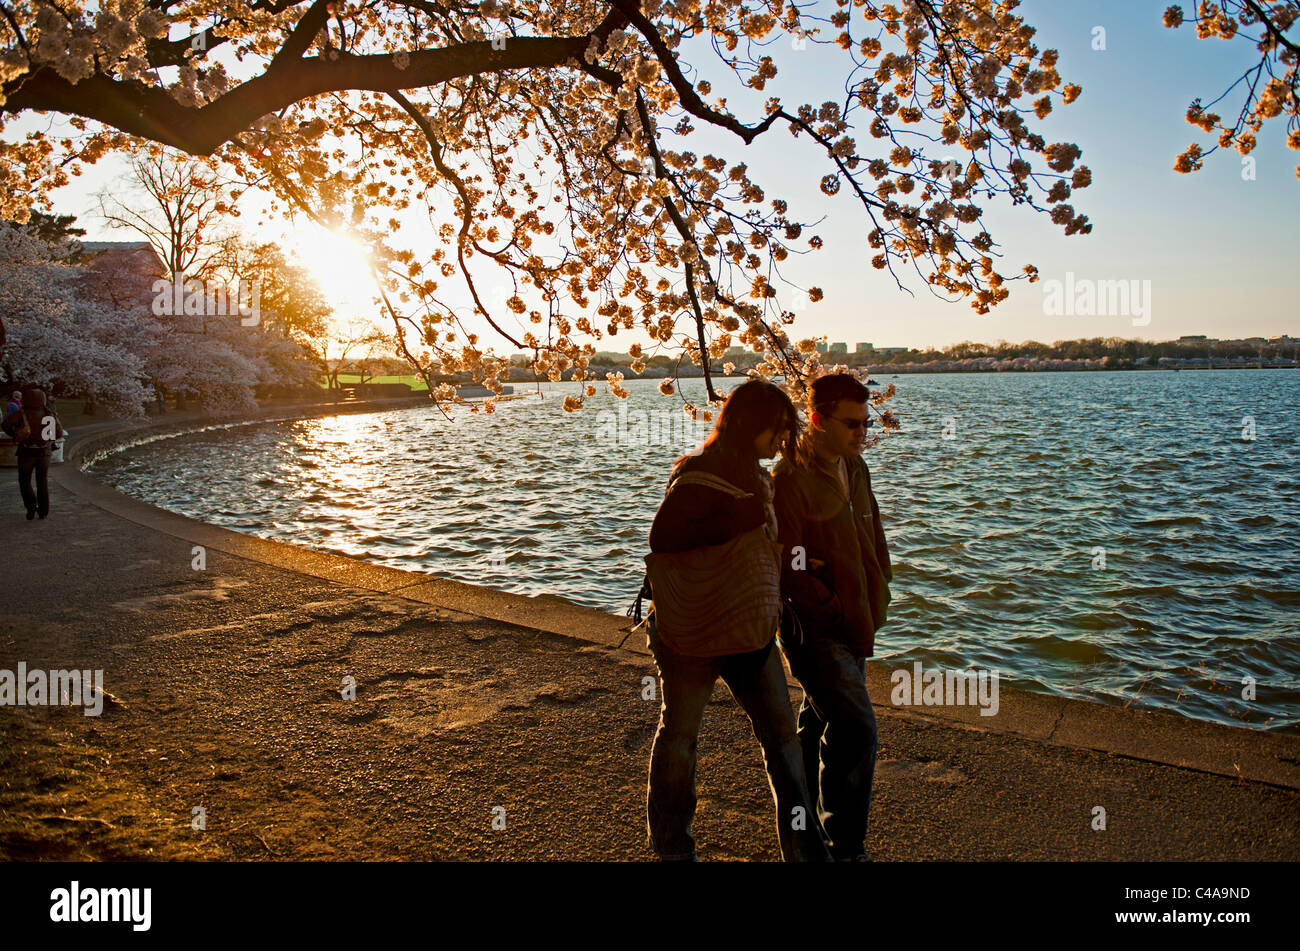 Ein Mann & Frau den Weg gehen um das Gezeitenbecken bei Sonnenuntergang in Washington, D.C. während Spitzenzeiten Blüte der Kirsche blüht Stockfoto